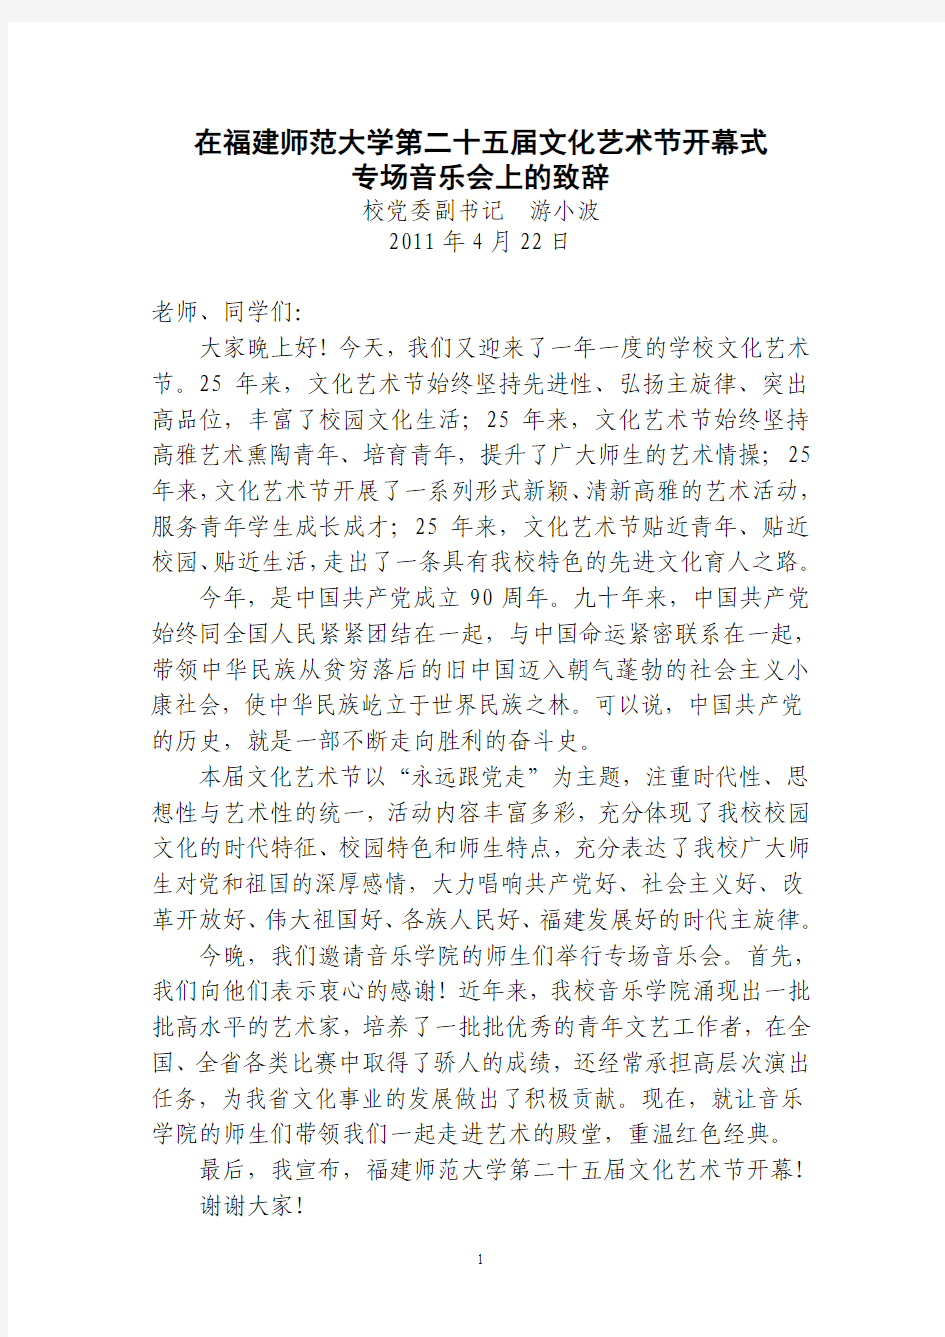 福建师范大学第二十五届文化艺术节开幕式致辞定稿